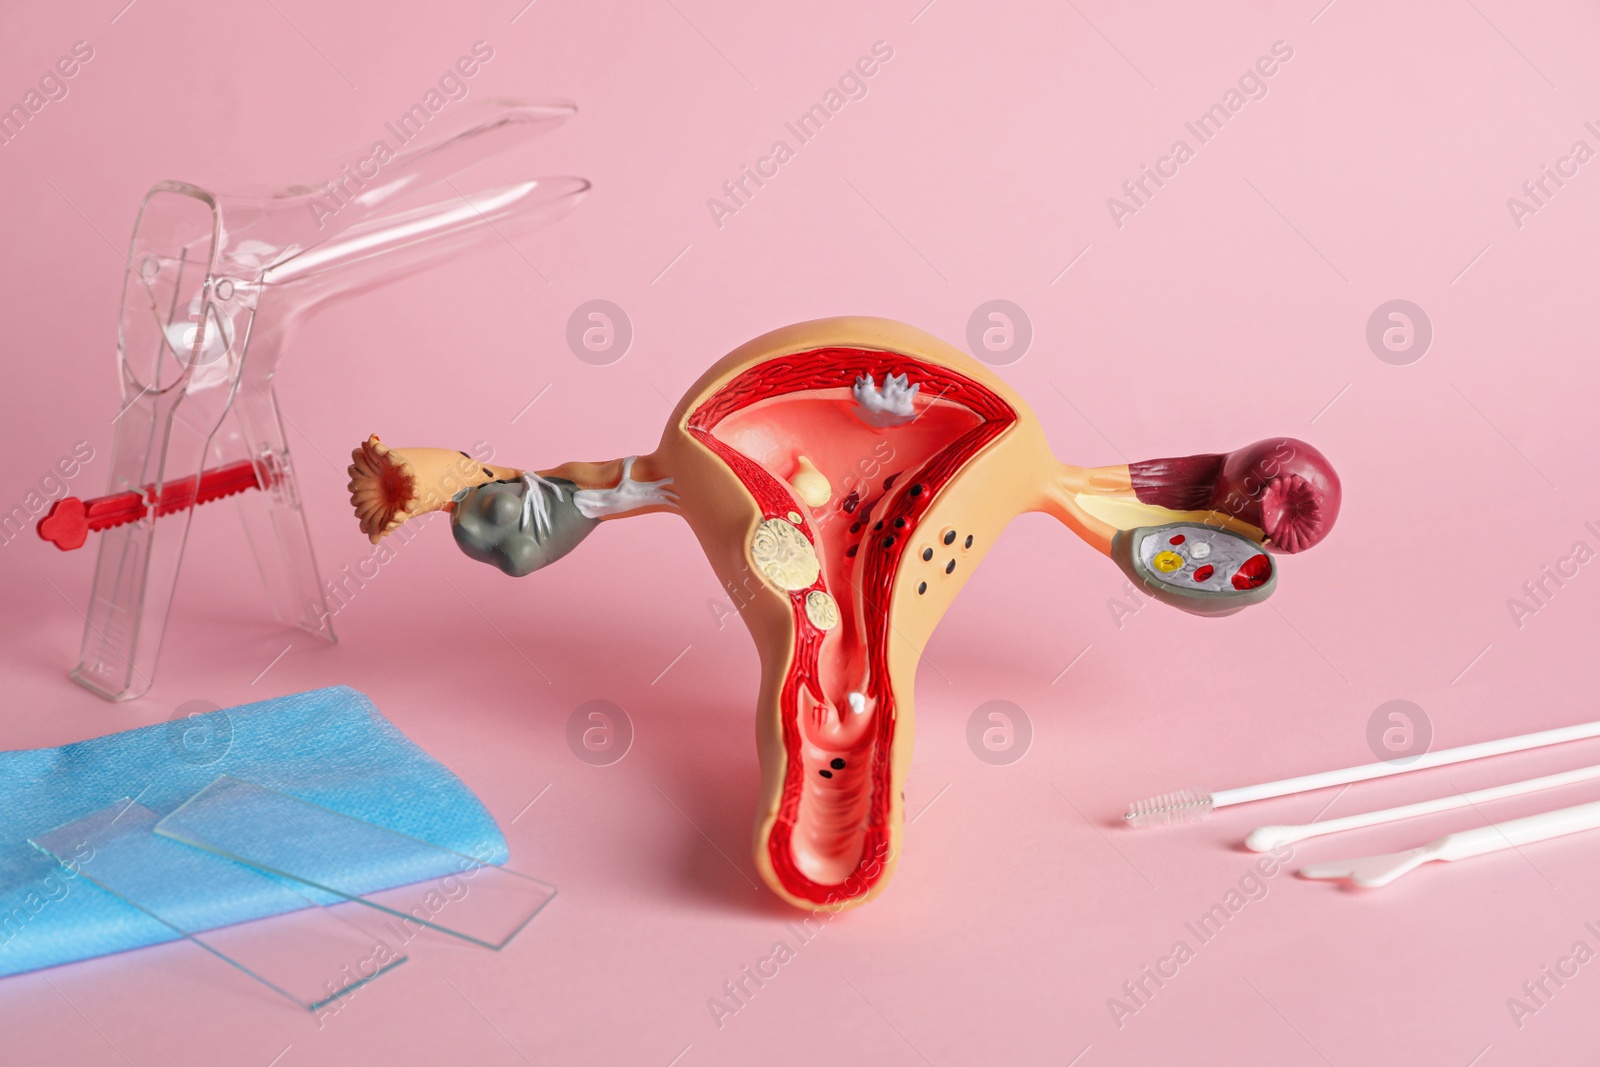 Photo of Gynecological examination kit and anatomical uterus model on pink background